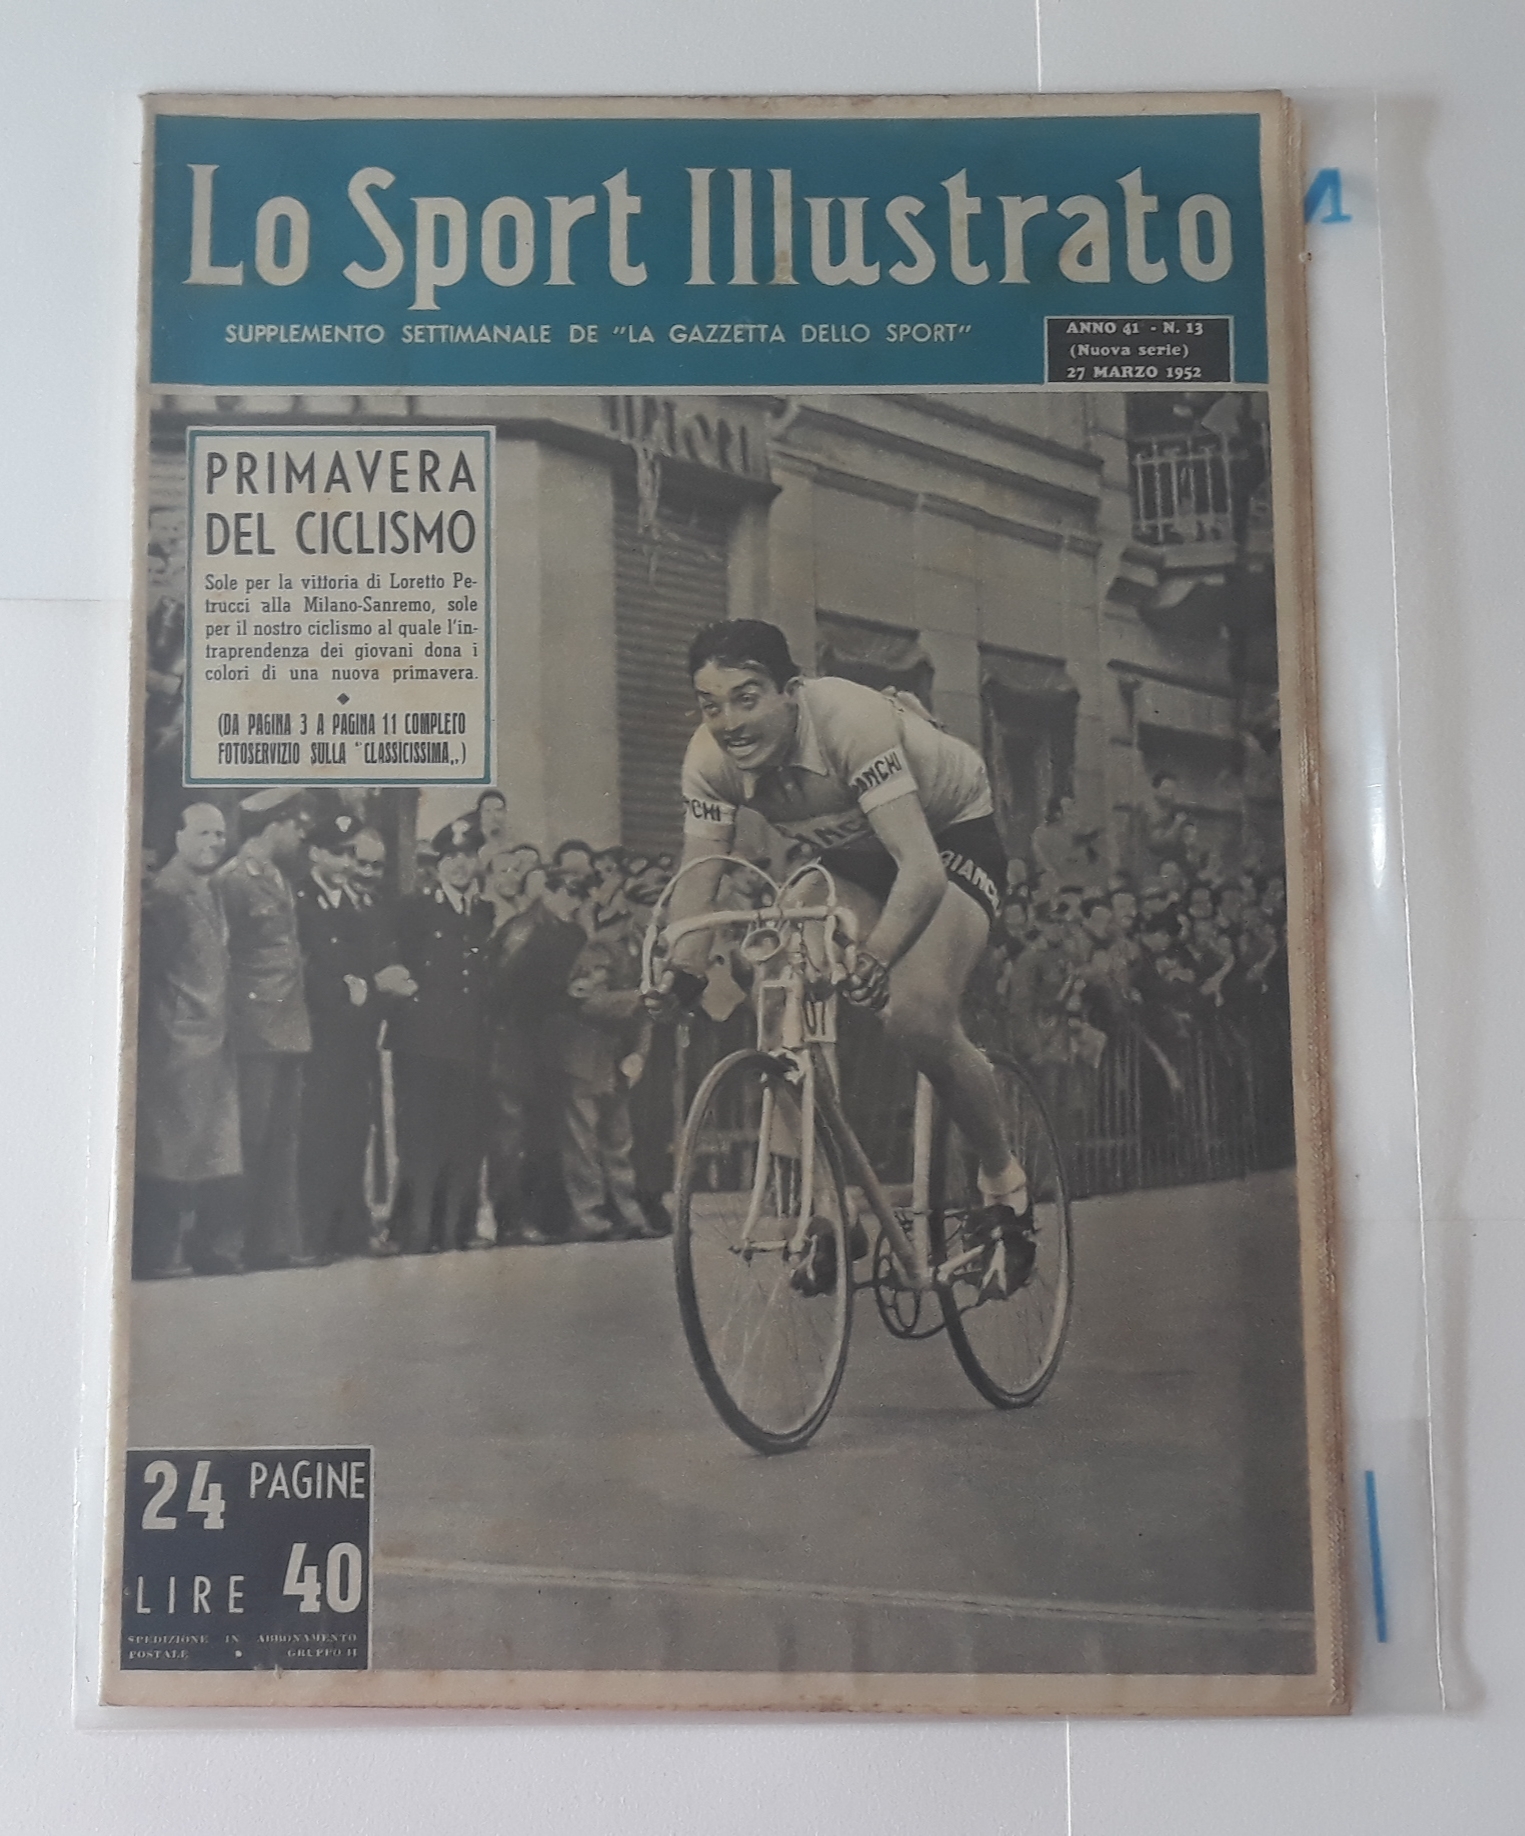 Lo Sport Illustrato De "La Gazzetta Dello Sport" N'13 March 1952 AG